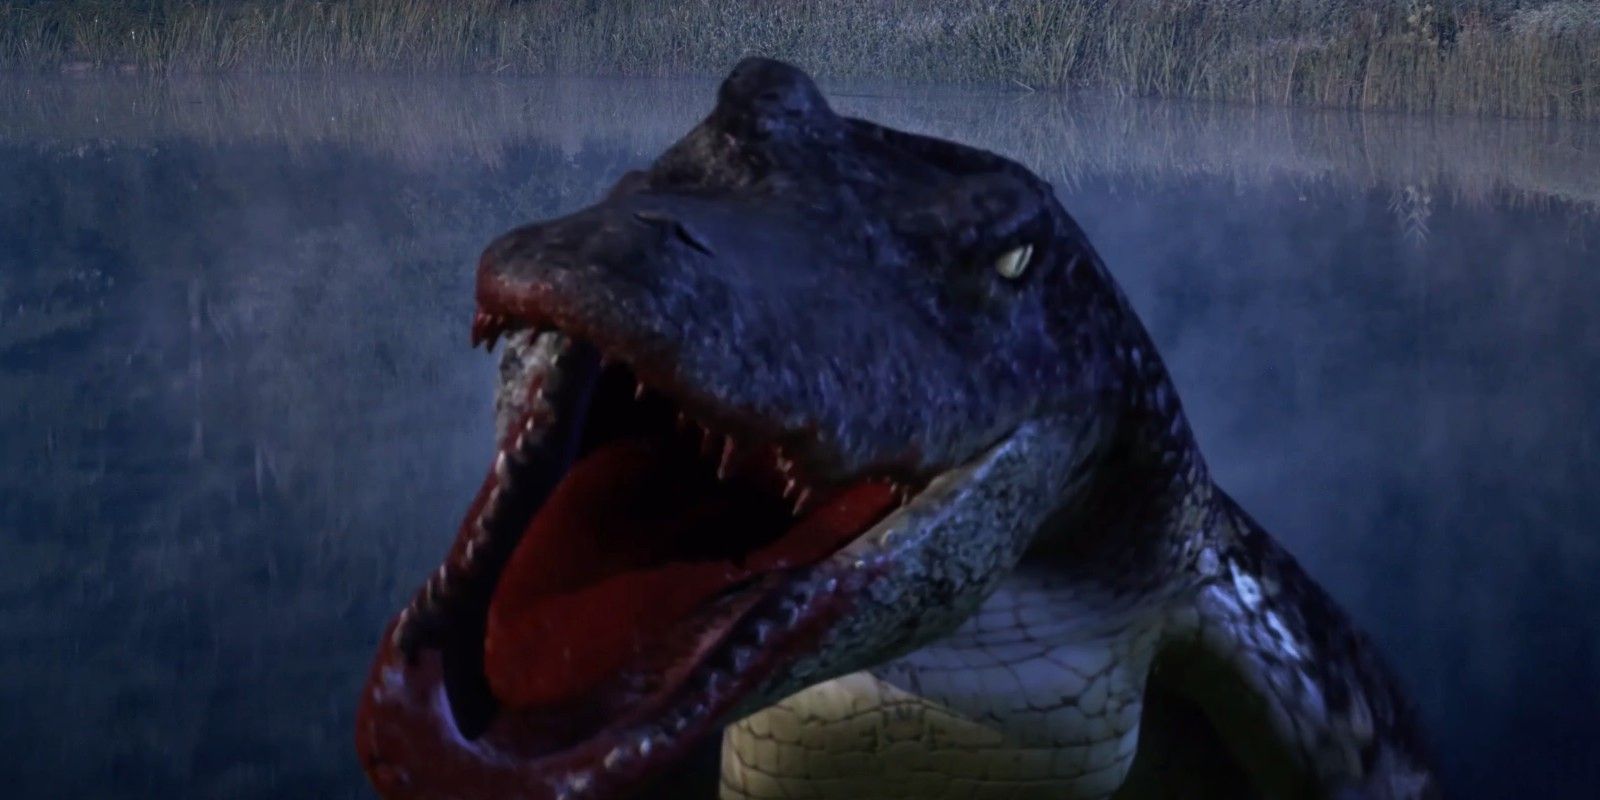 La película de terror Alligator, titulada irónicamente, recibe críticas sorprendentemente positivas por parte de los artistas de efectos visuales